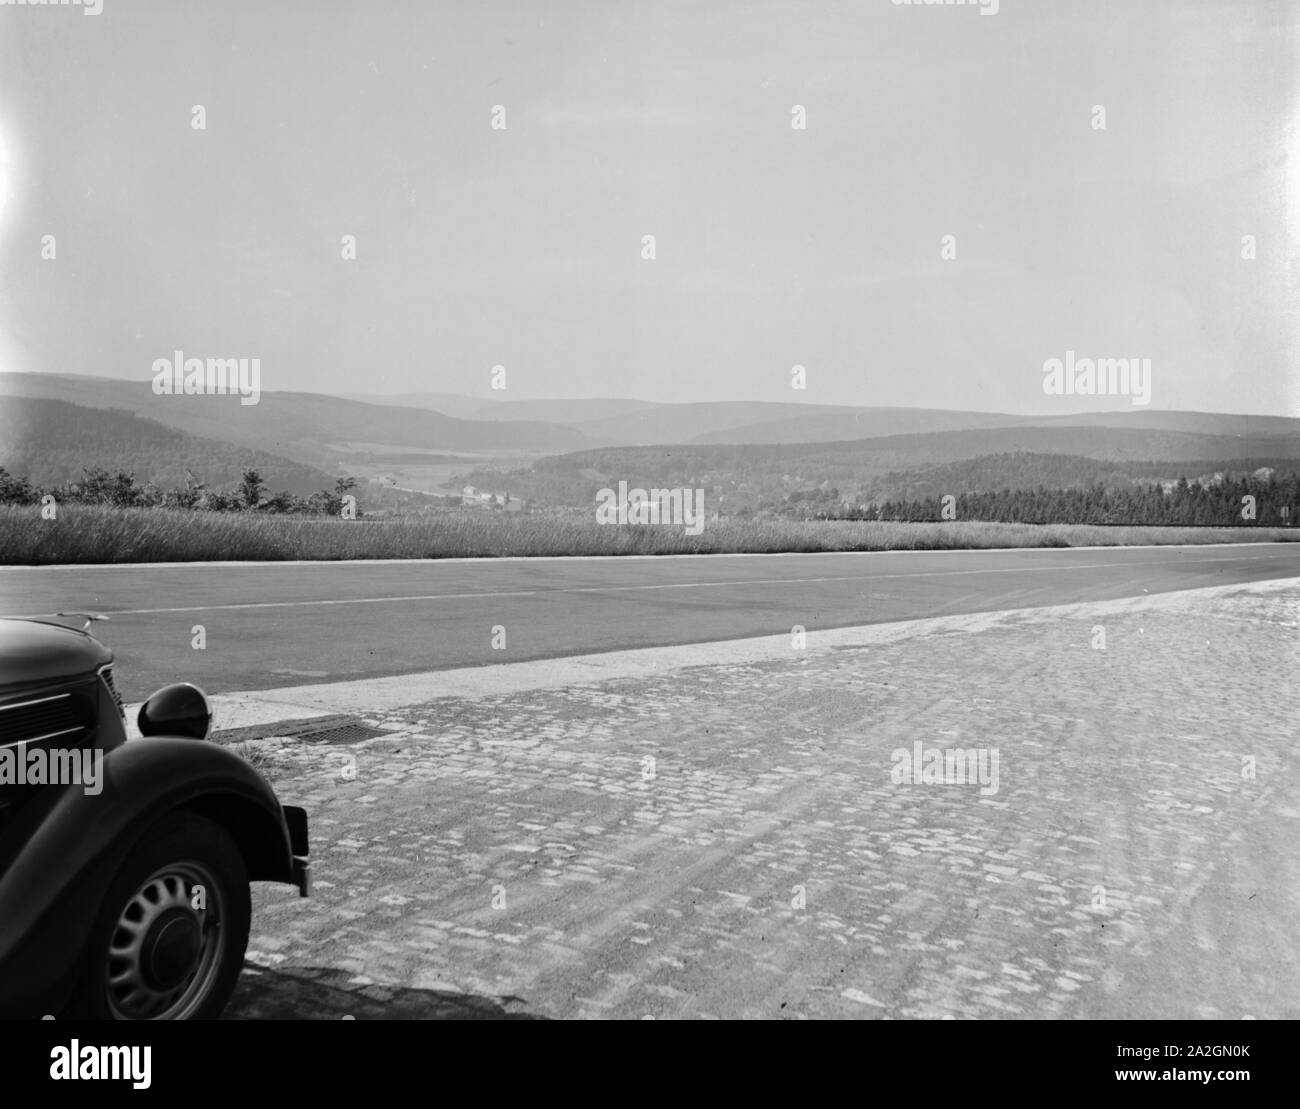 Durch Die deutschen Landschaften, Deutschland 1930er Jahre. En thr carretera a través de las regiones de Alemania 1930. Foto de stock